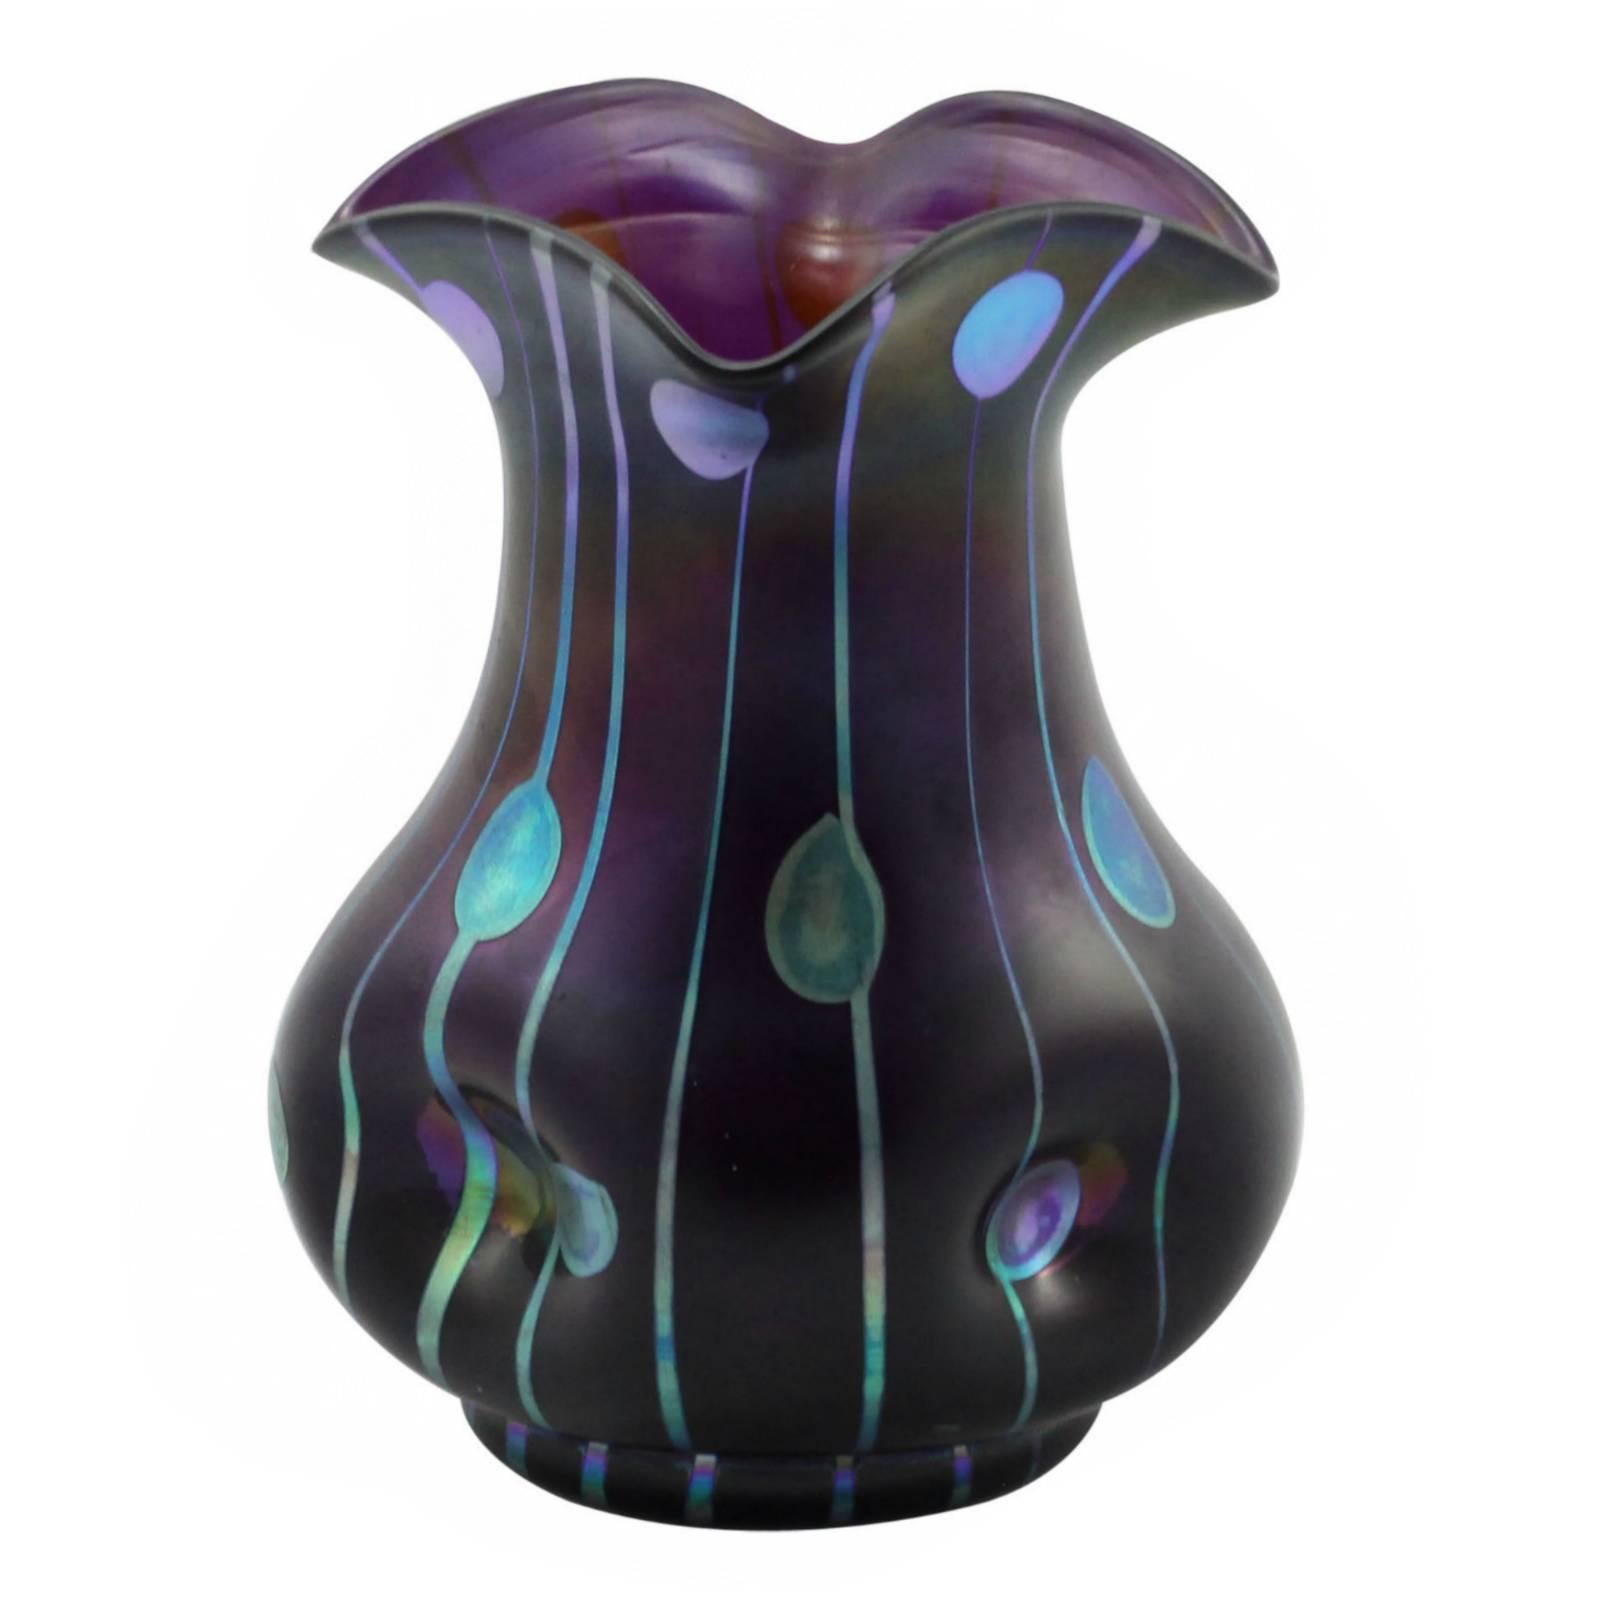 Art Nouveau "Steifen Und Flecken" Vase Attributed to Loetz